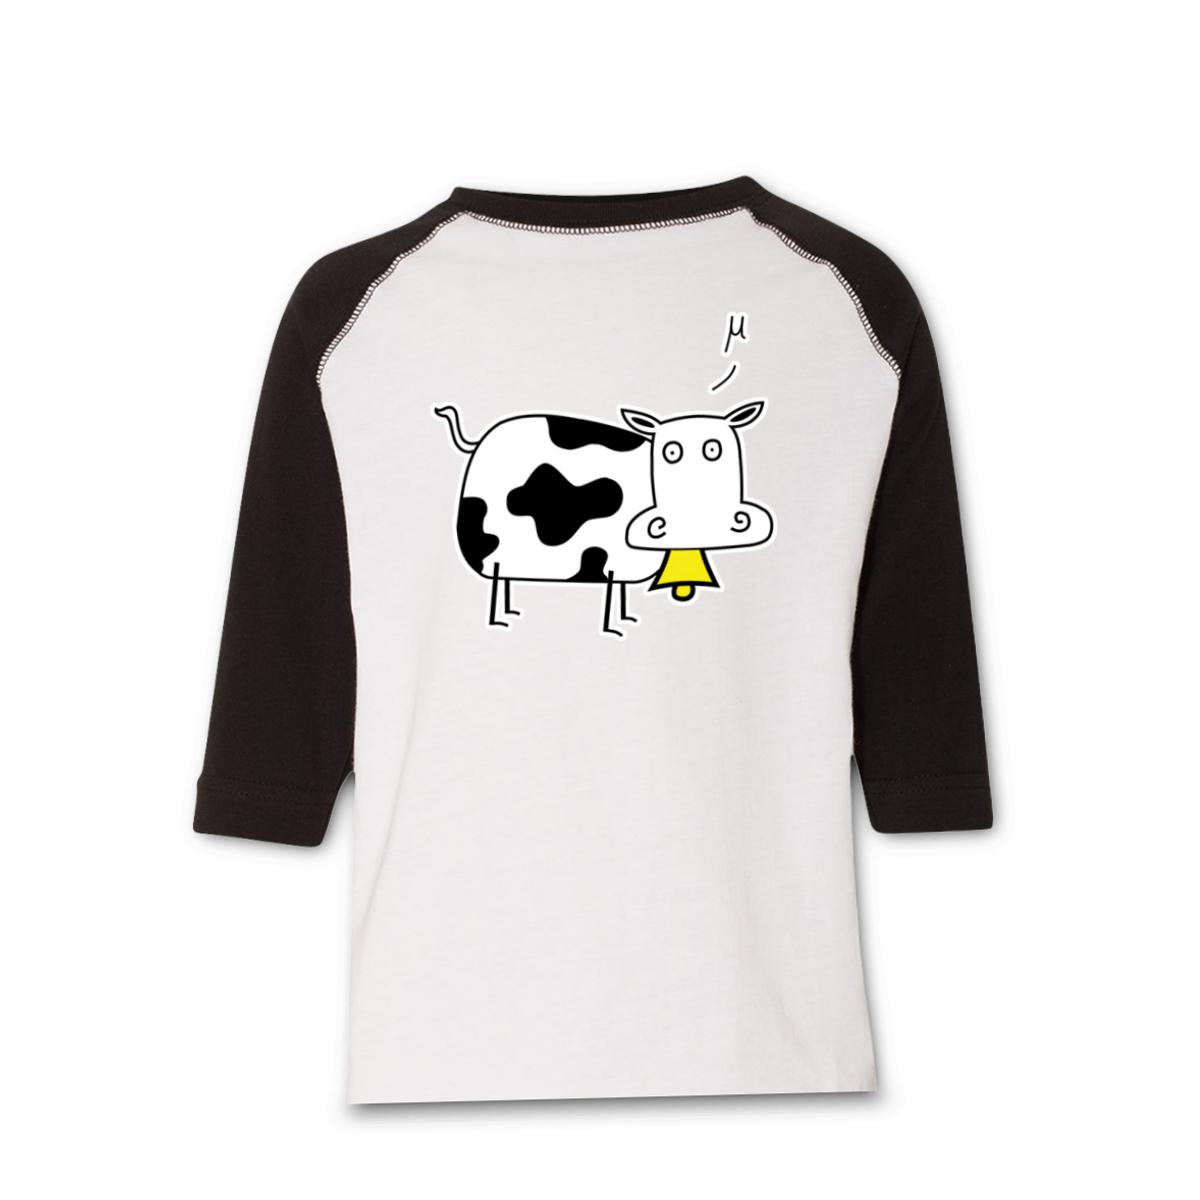 Mu Cow Toddler Raglan Tee 4T white-black